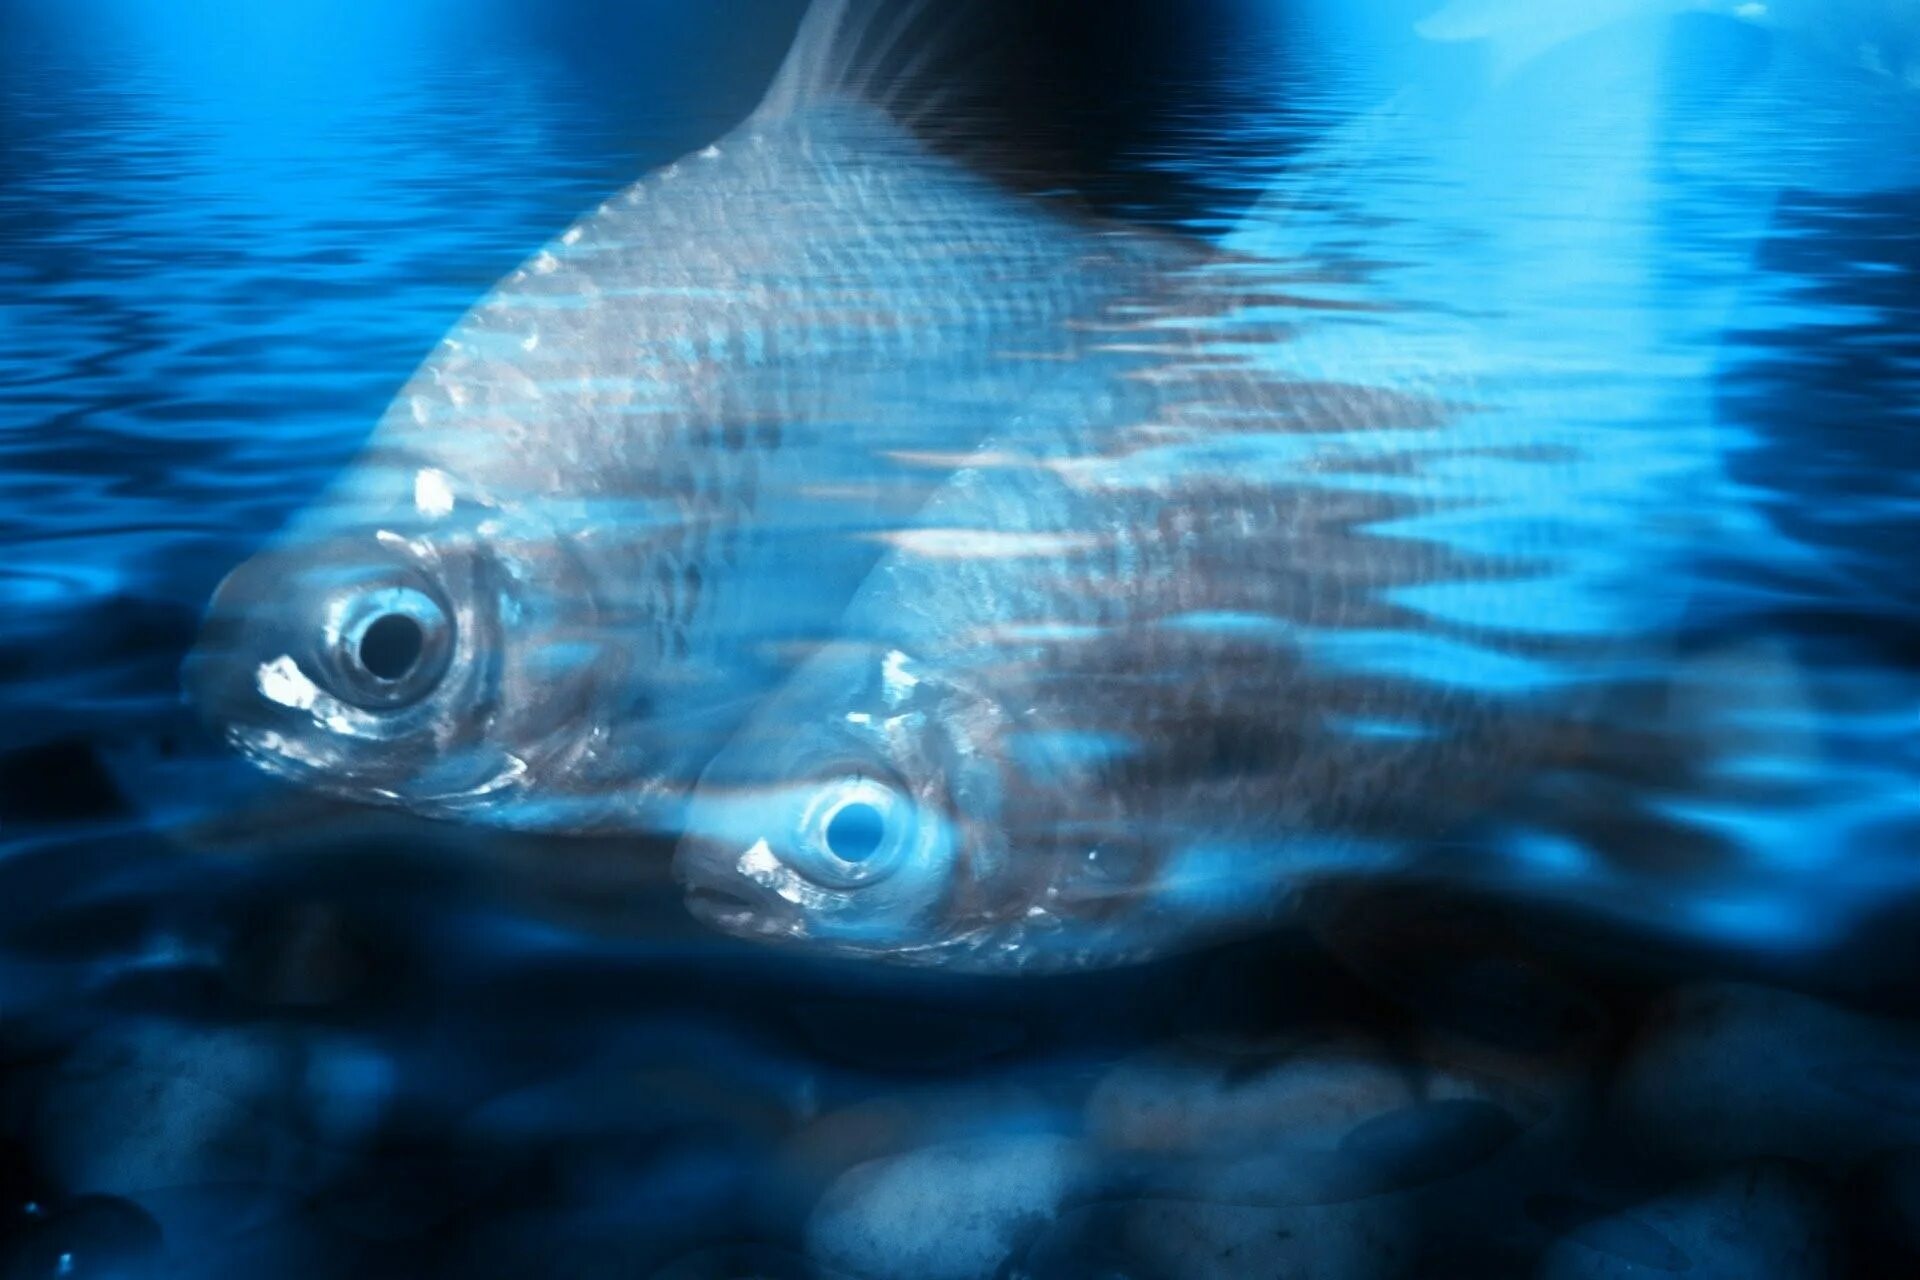 Рыба в воде. Фон вода с рыбой. Рыба плавает в воде. Рыба в голубой воде.